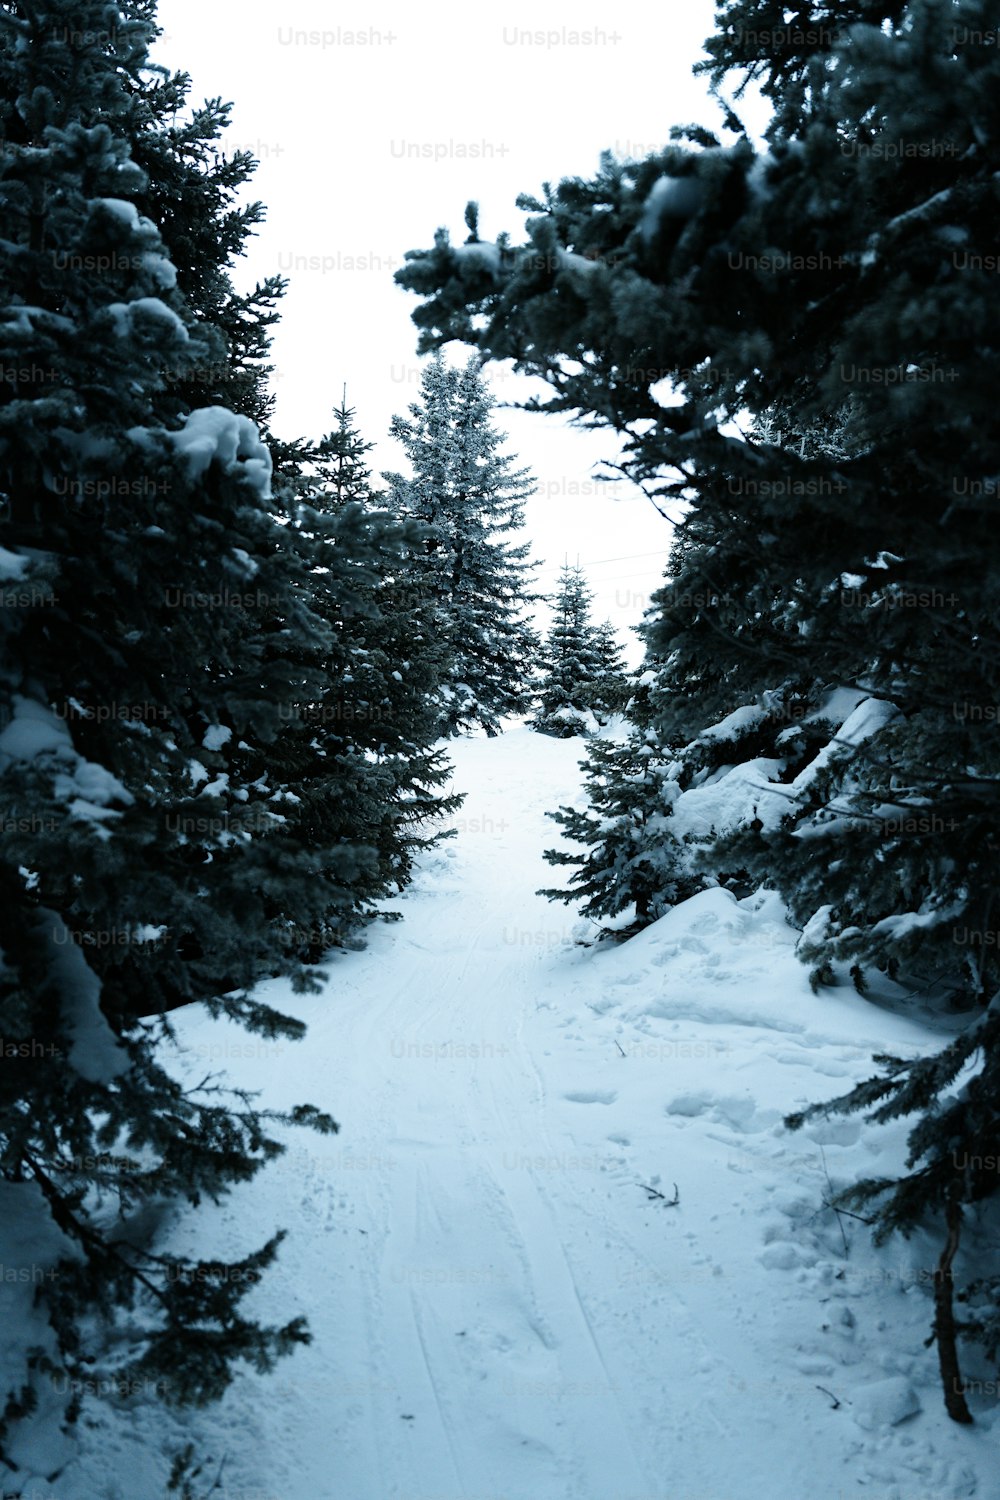 eine Person auf Skiern, die einen verschneiten Weg hinunterfährt